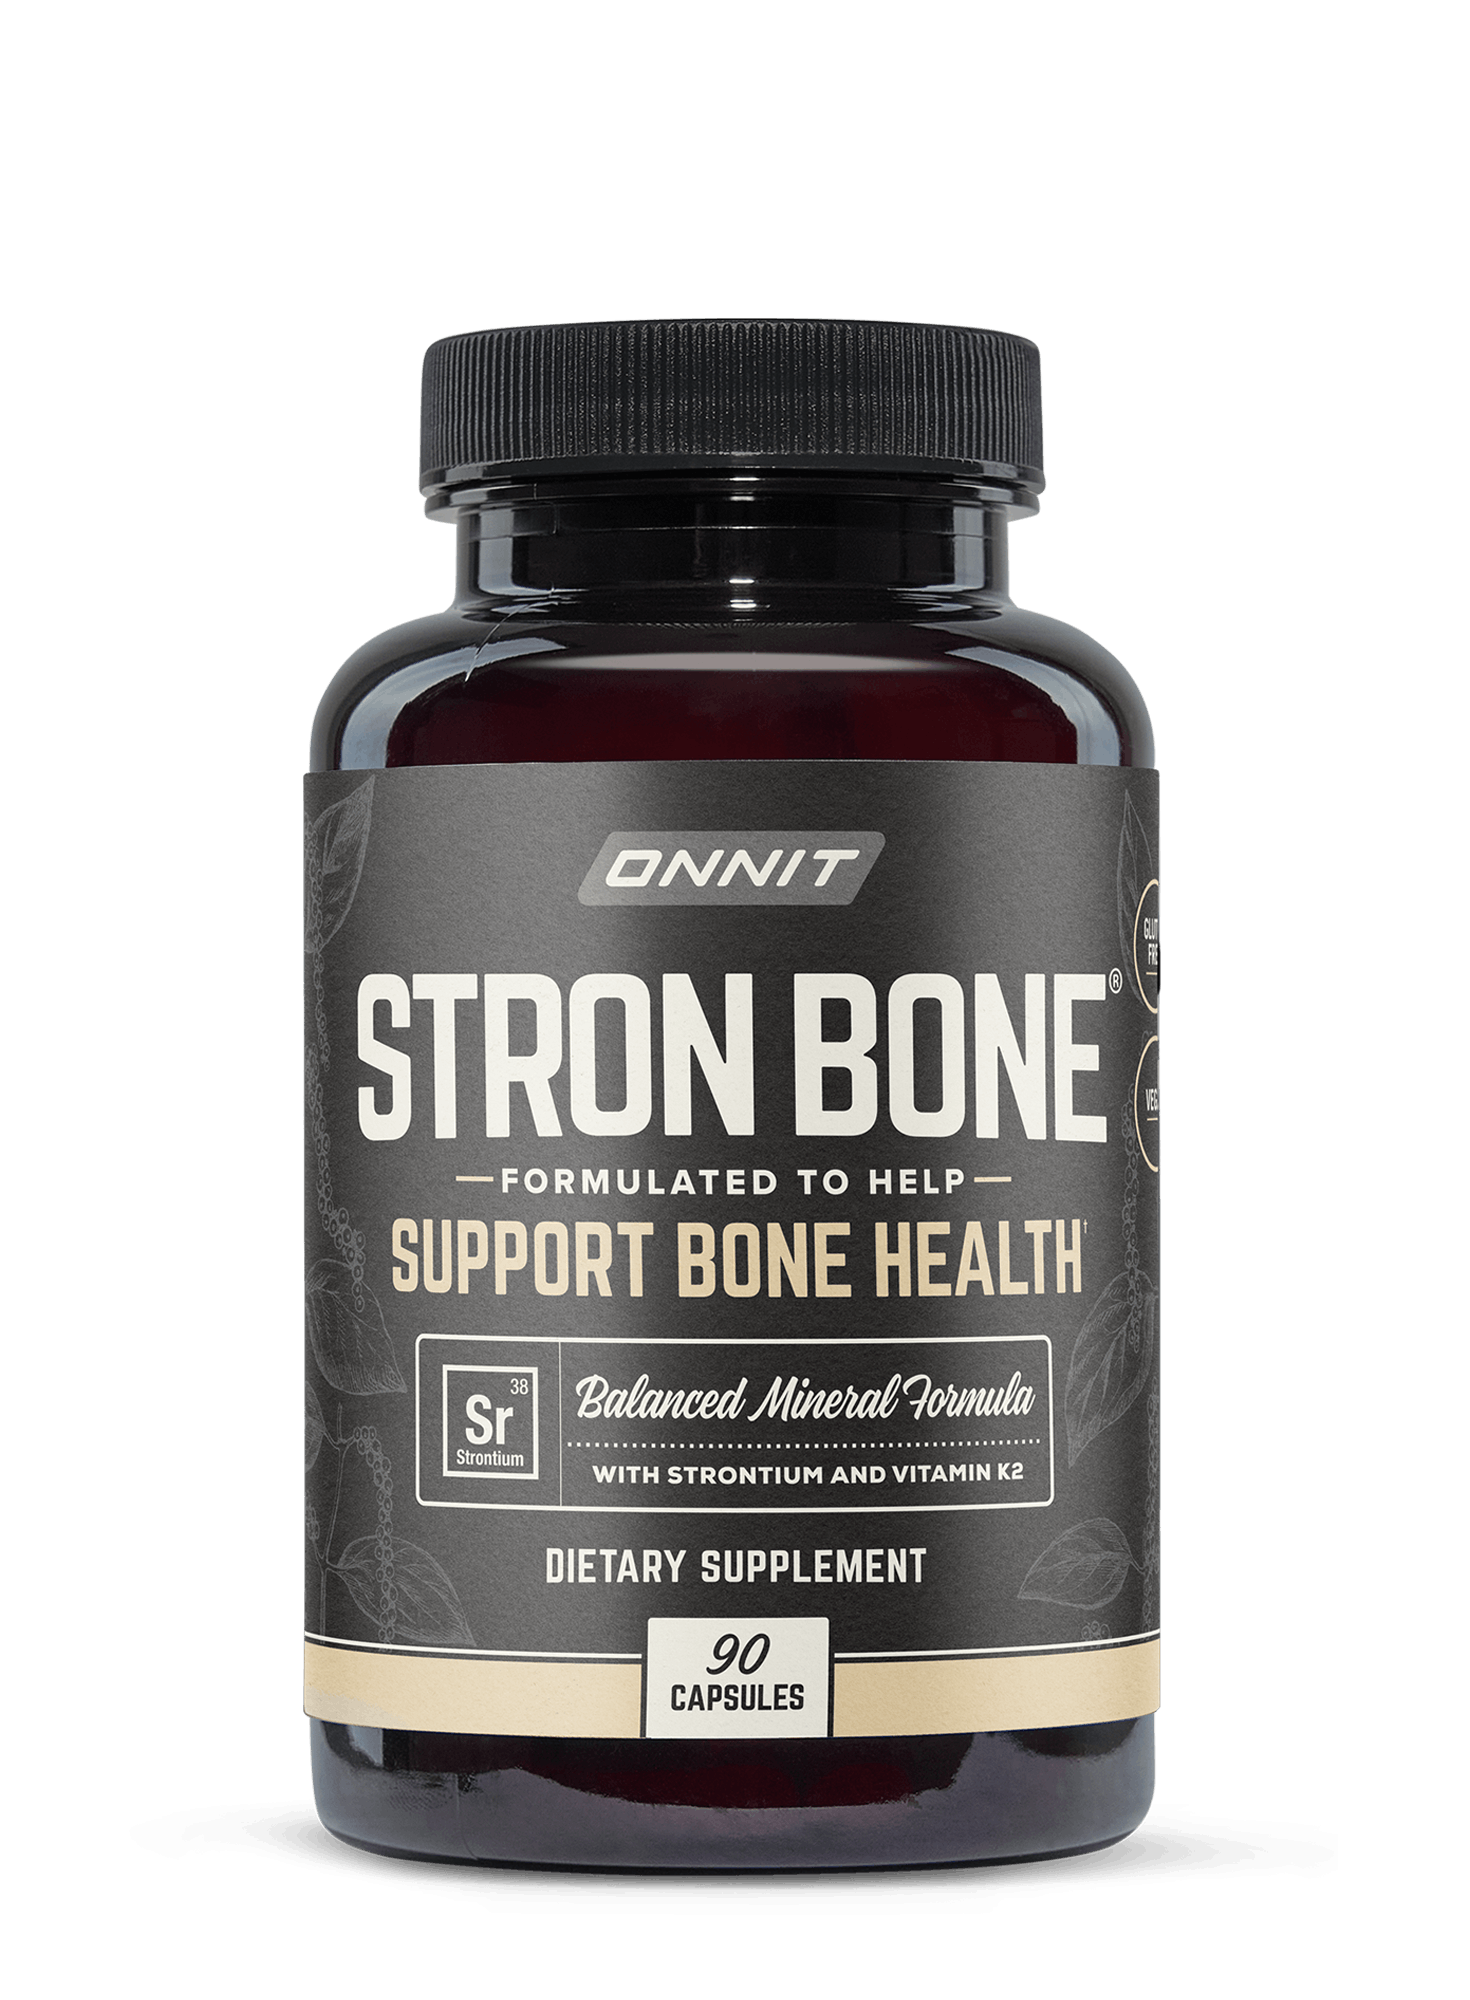  Stron BONE Strontium Supplement For Bone Health Onnit